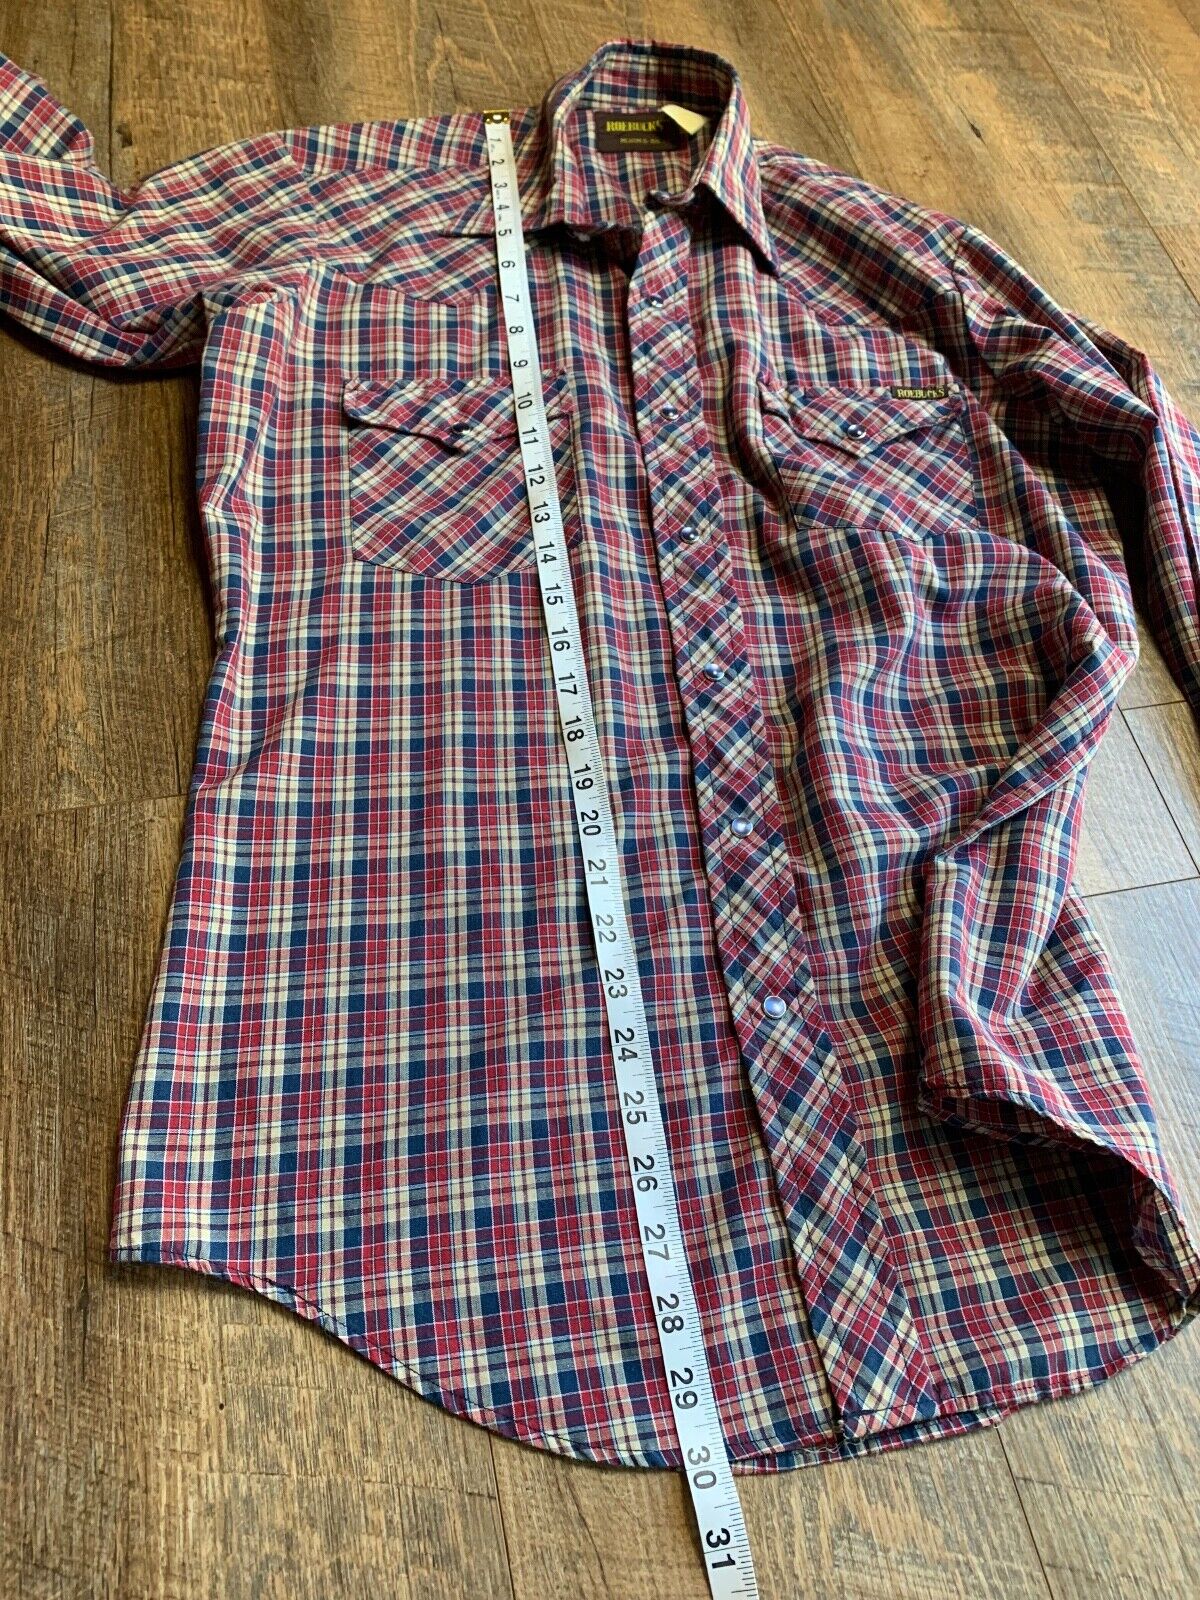 Vintage Sears Roebuck Co. Men's Shirt Pearl Weste… - image 9